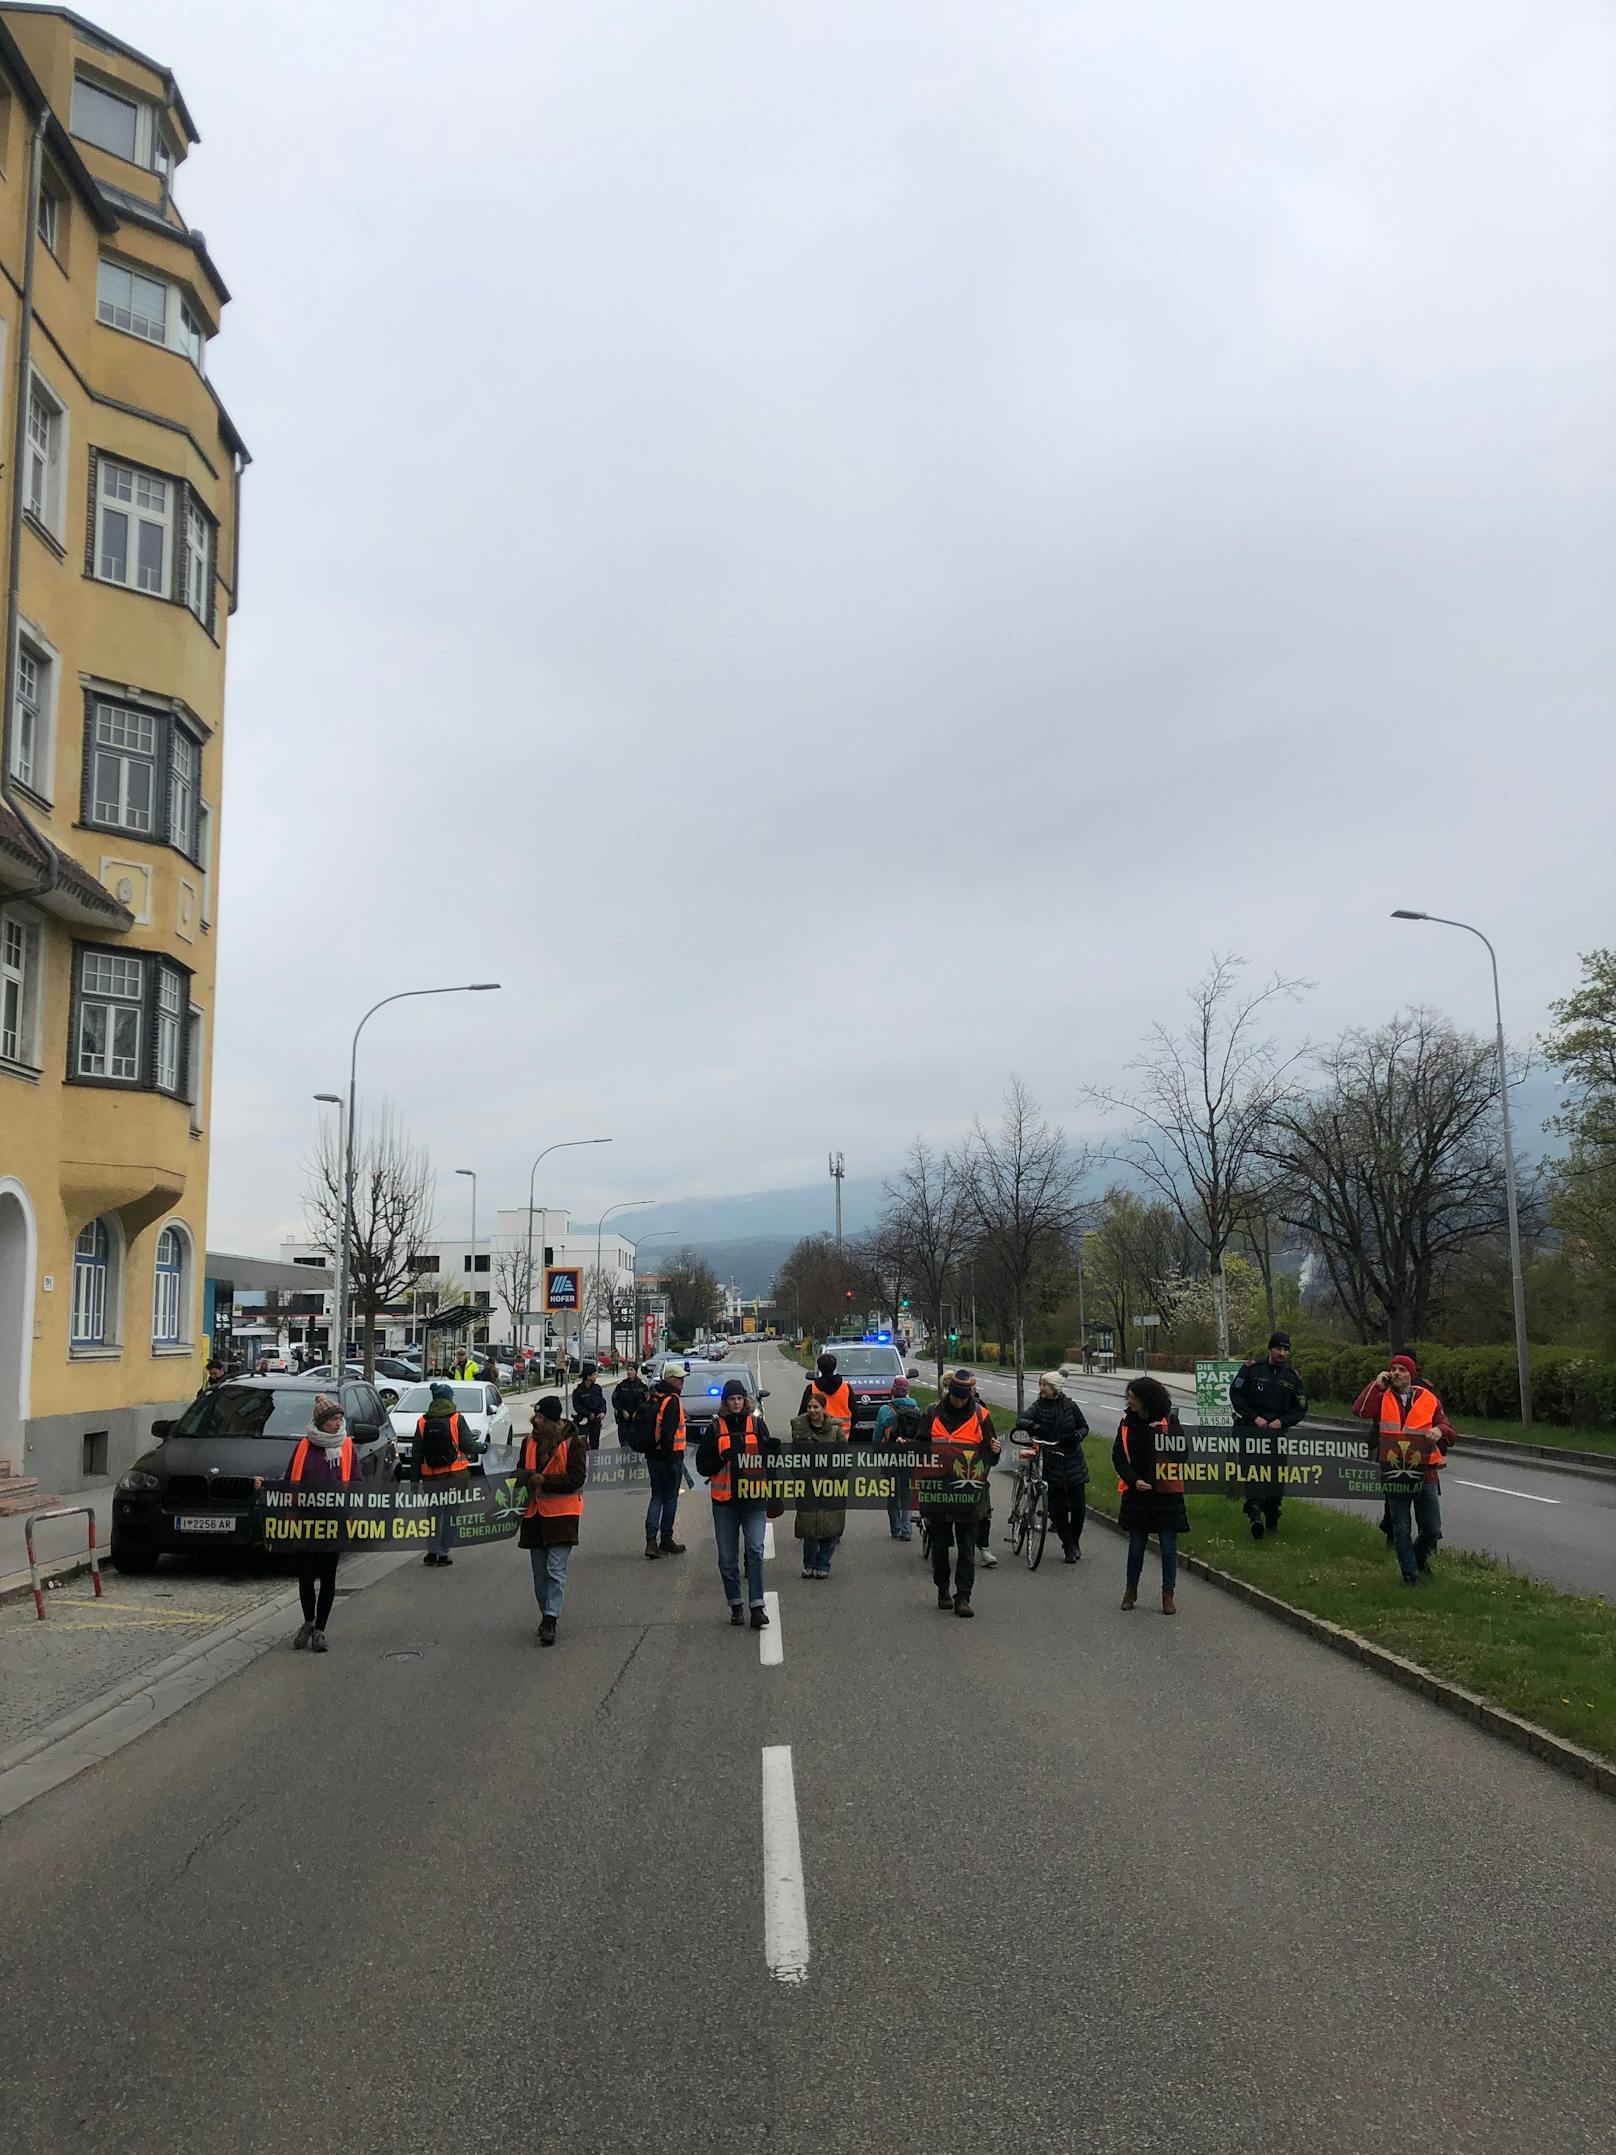 Am Dienstag wurde in Innsbruck demonstriert.